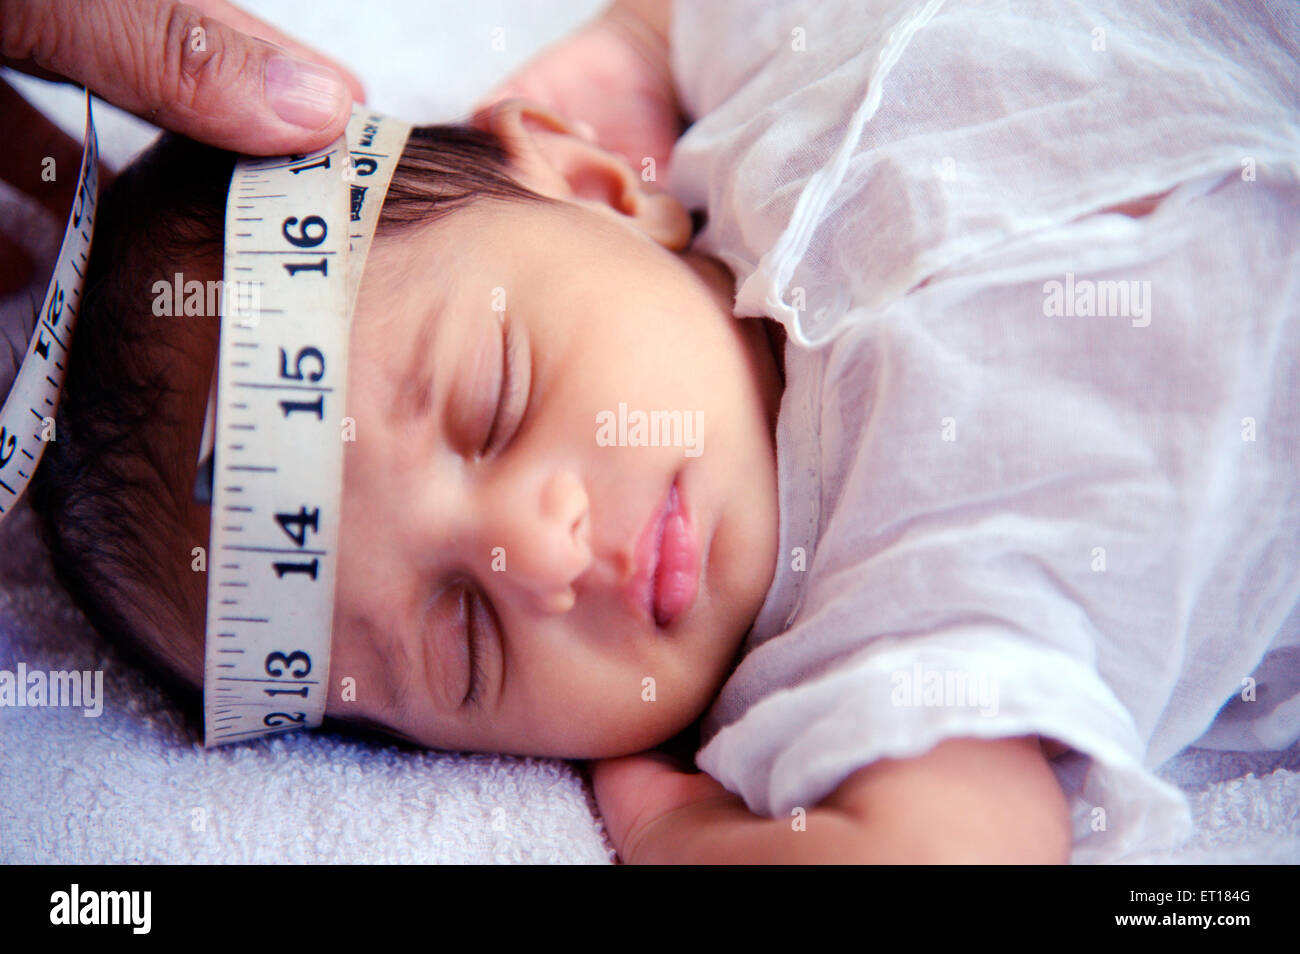 Cabeza de Indio new born baby con cinta de medir - MR#736J - rmm 179686 Foto de stock